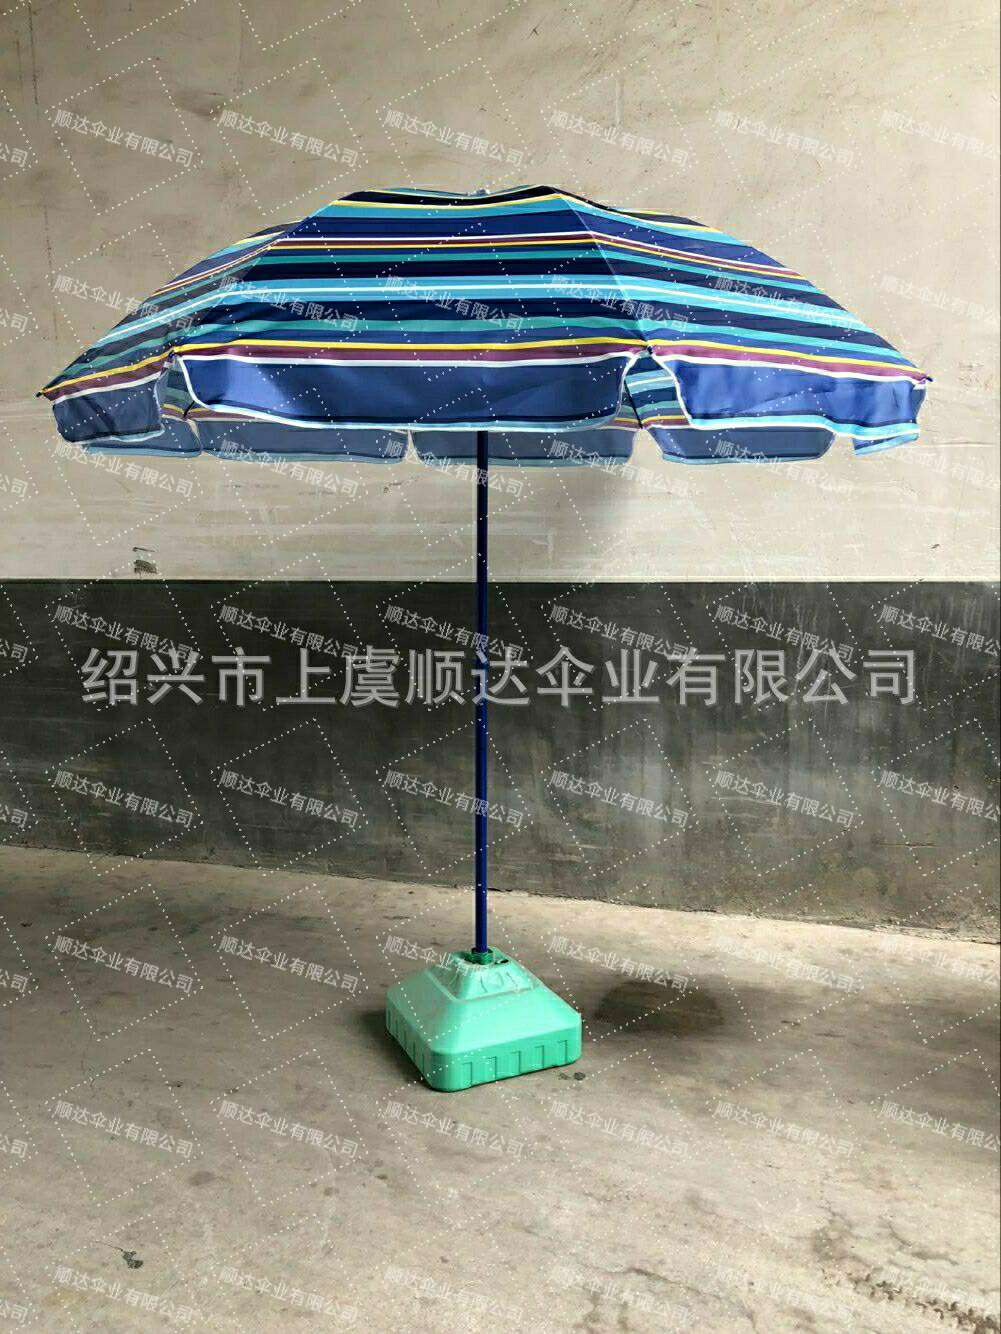 SD umbrella 厂家直销 出口欧洲 牛津布印花太阳伞详情图6